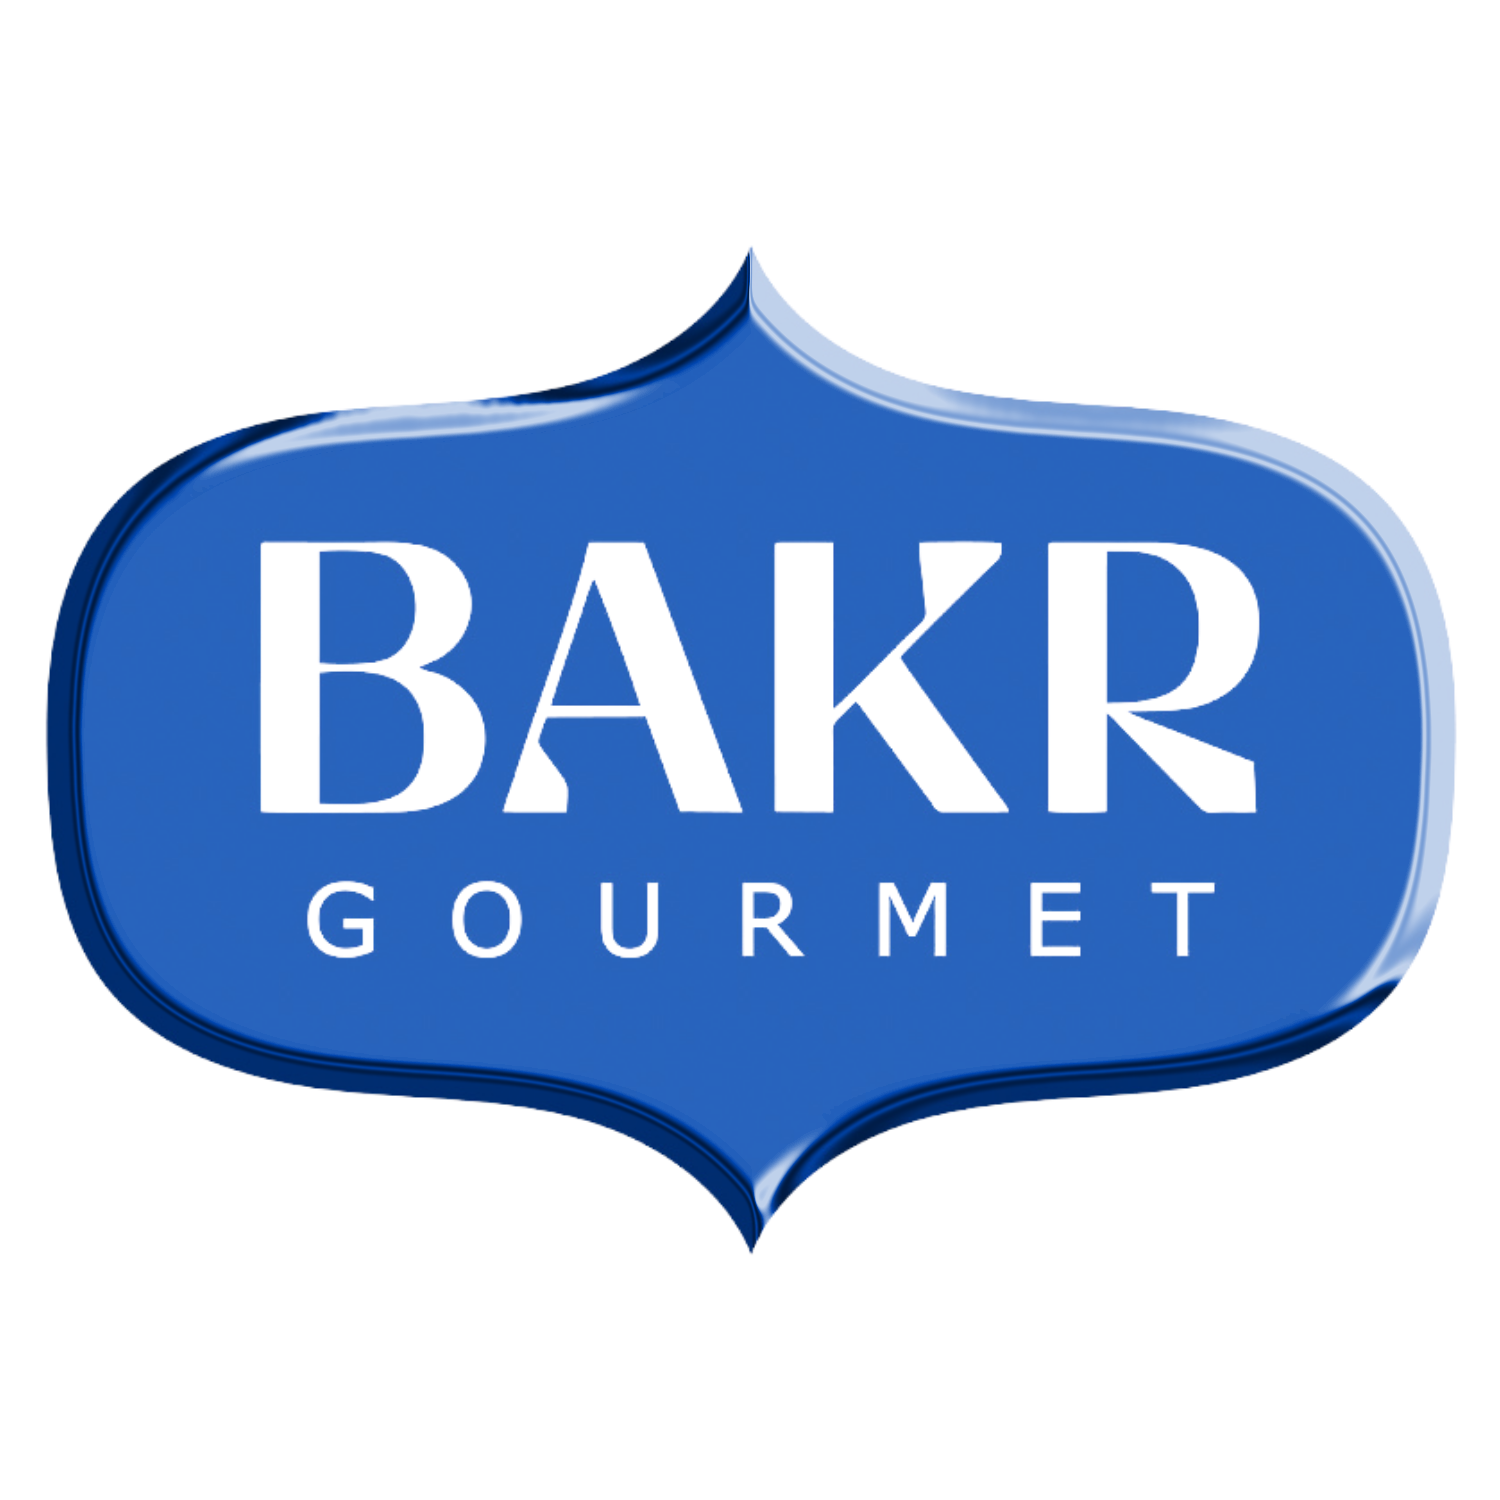 Bakr Gourmet